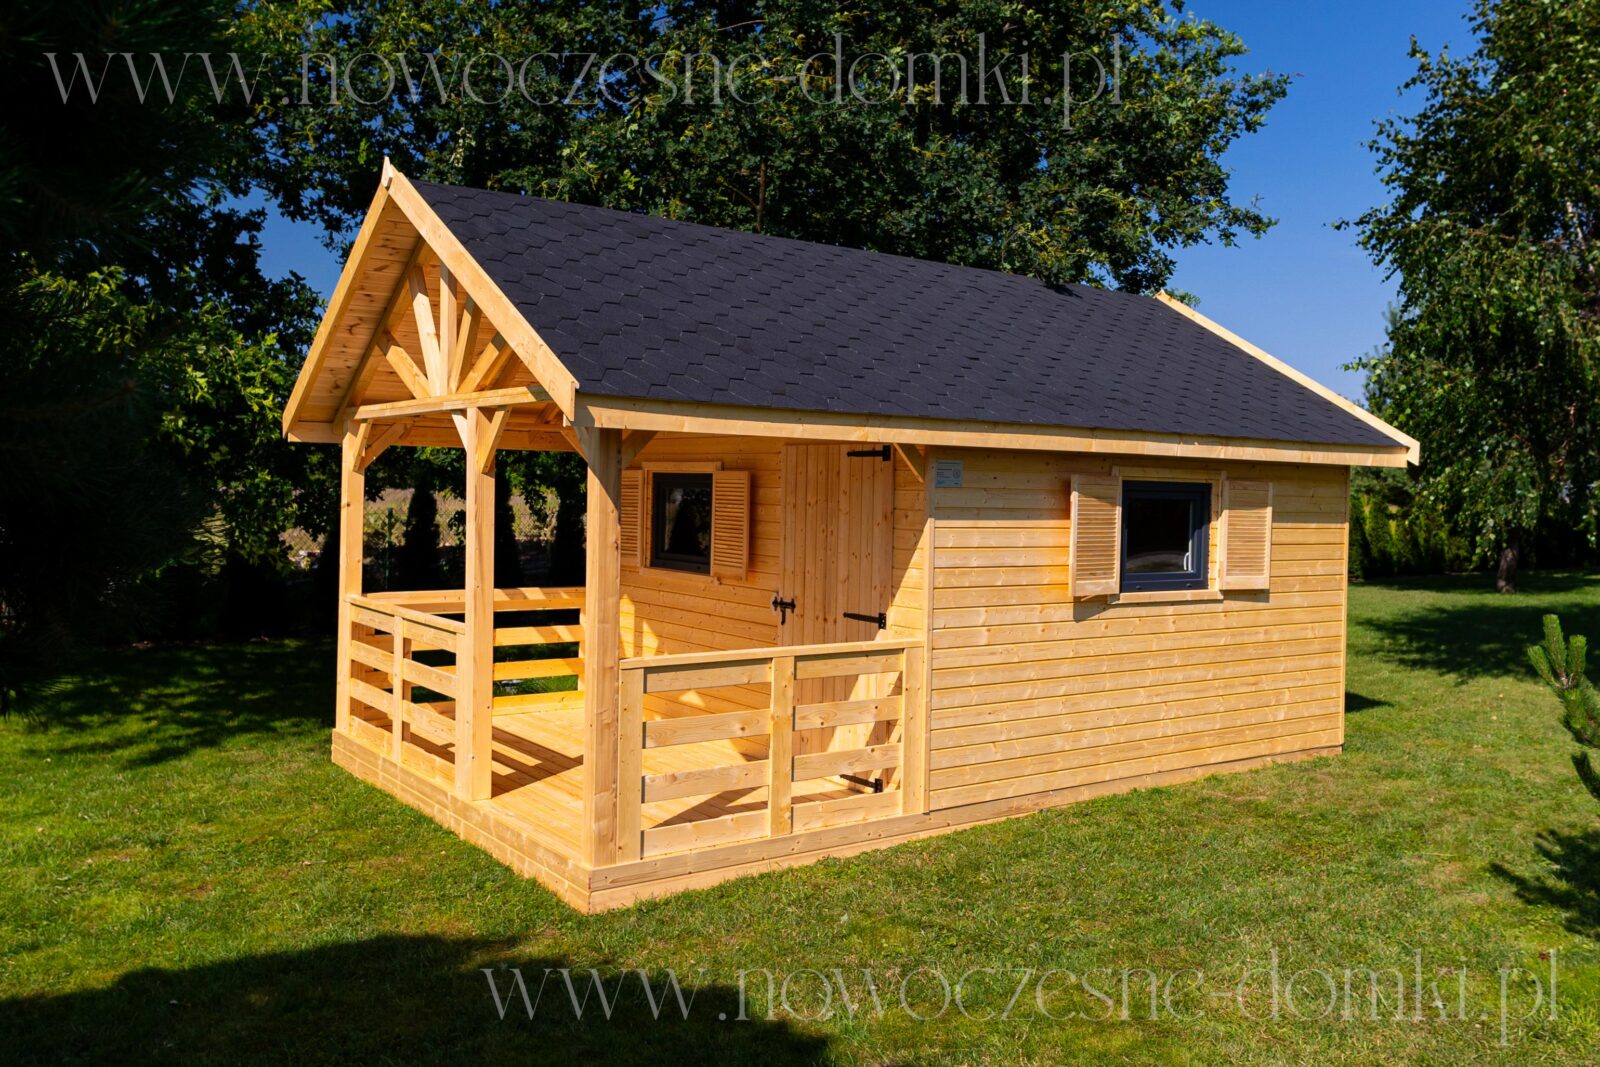 Drewniany domek w stylu wypoczynkowym na działce - harmonia z naturą dla letniego relaksu